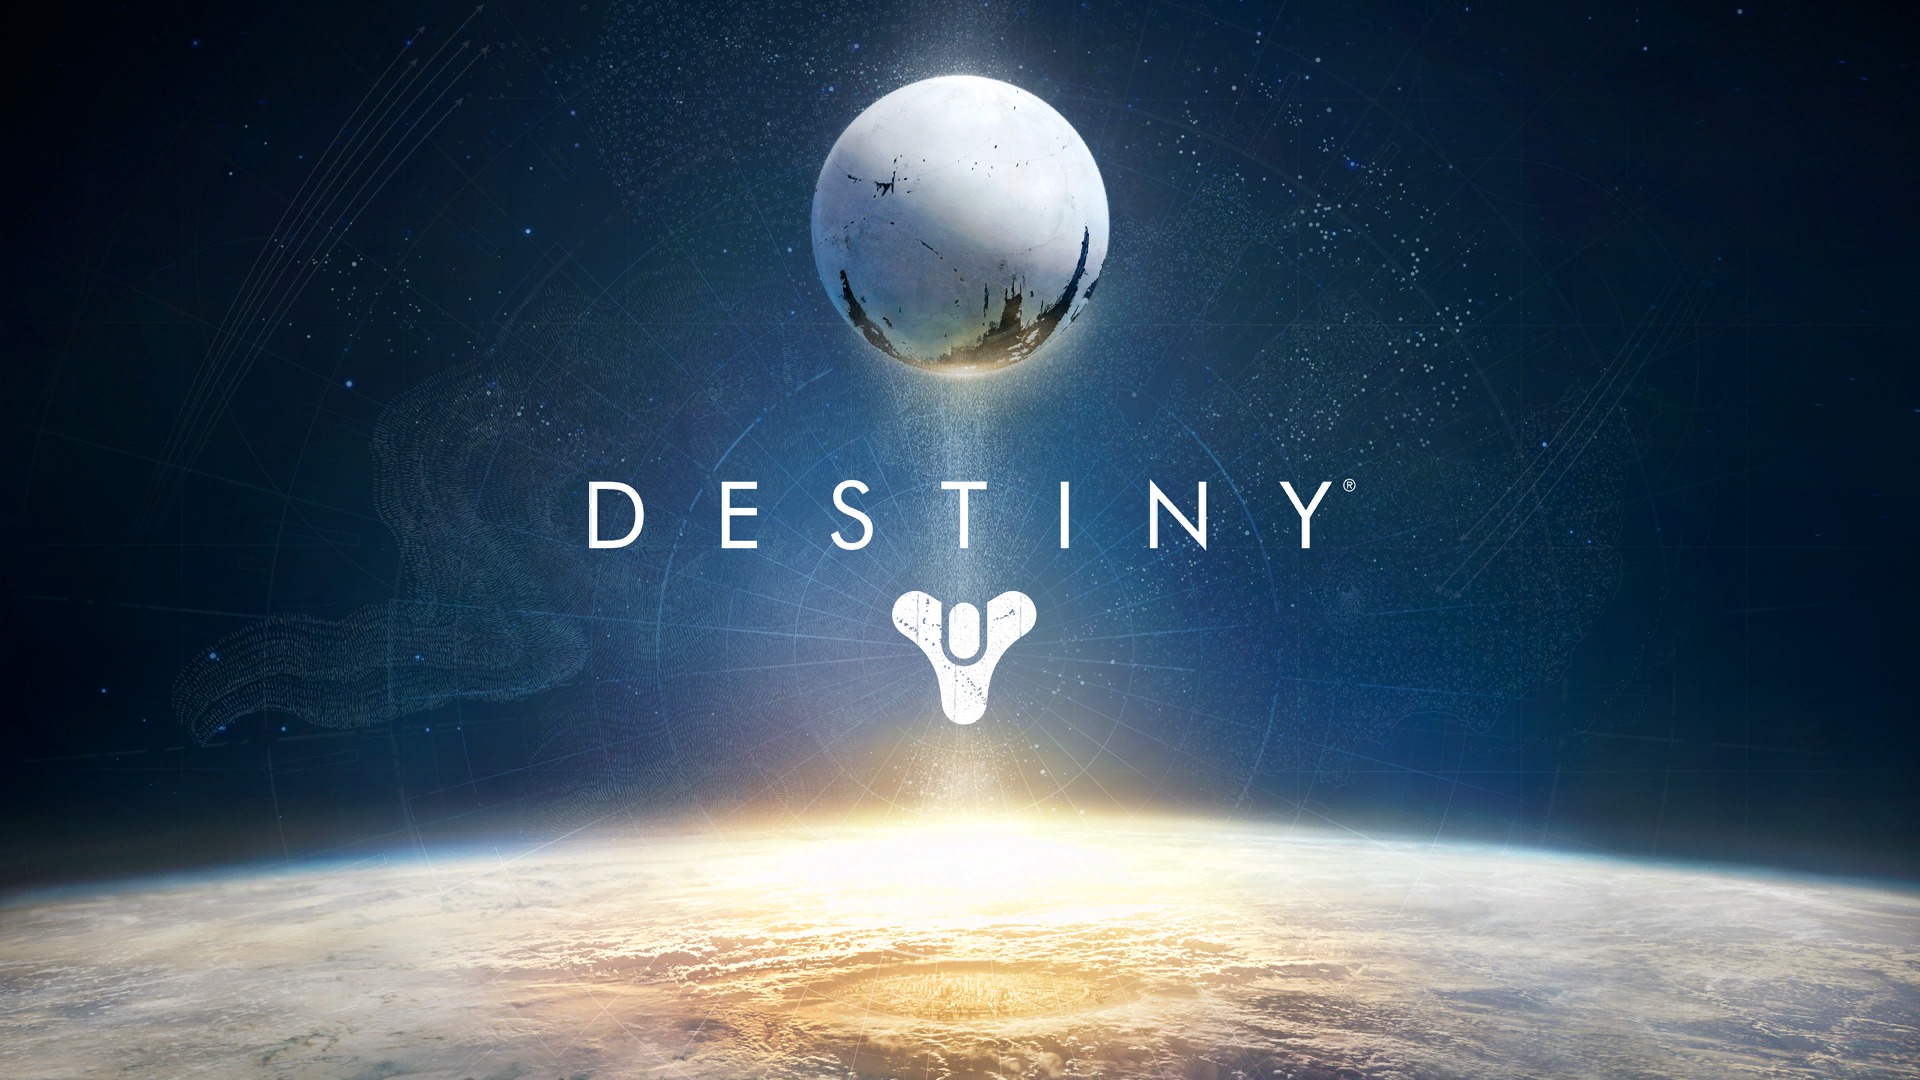 Destiny logo